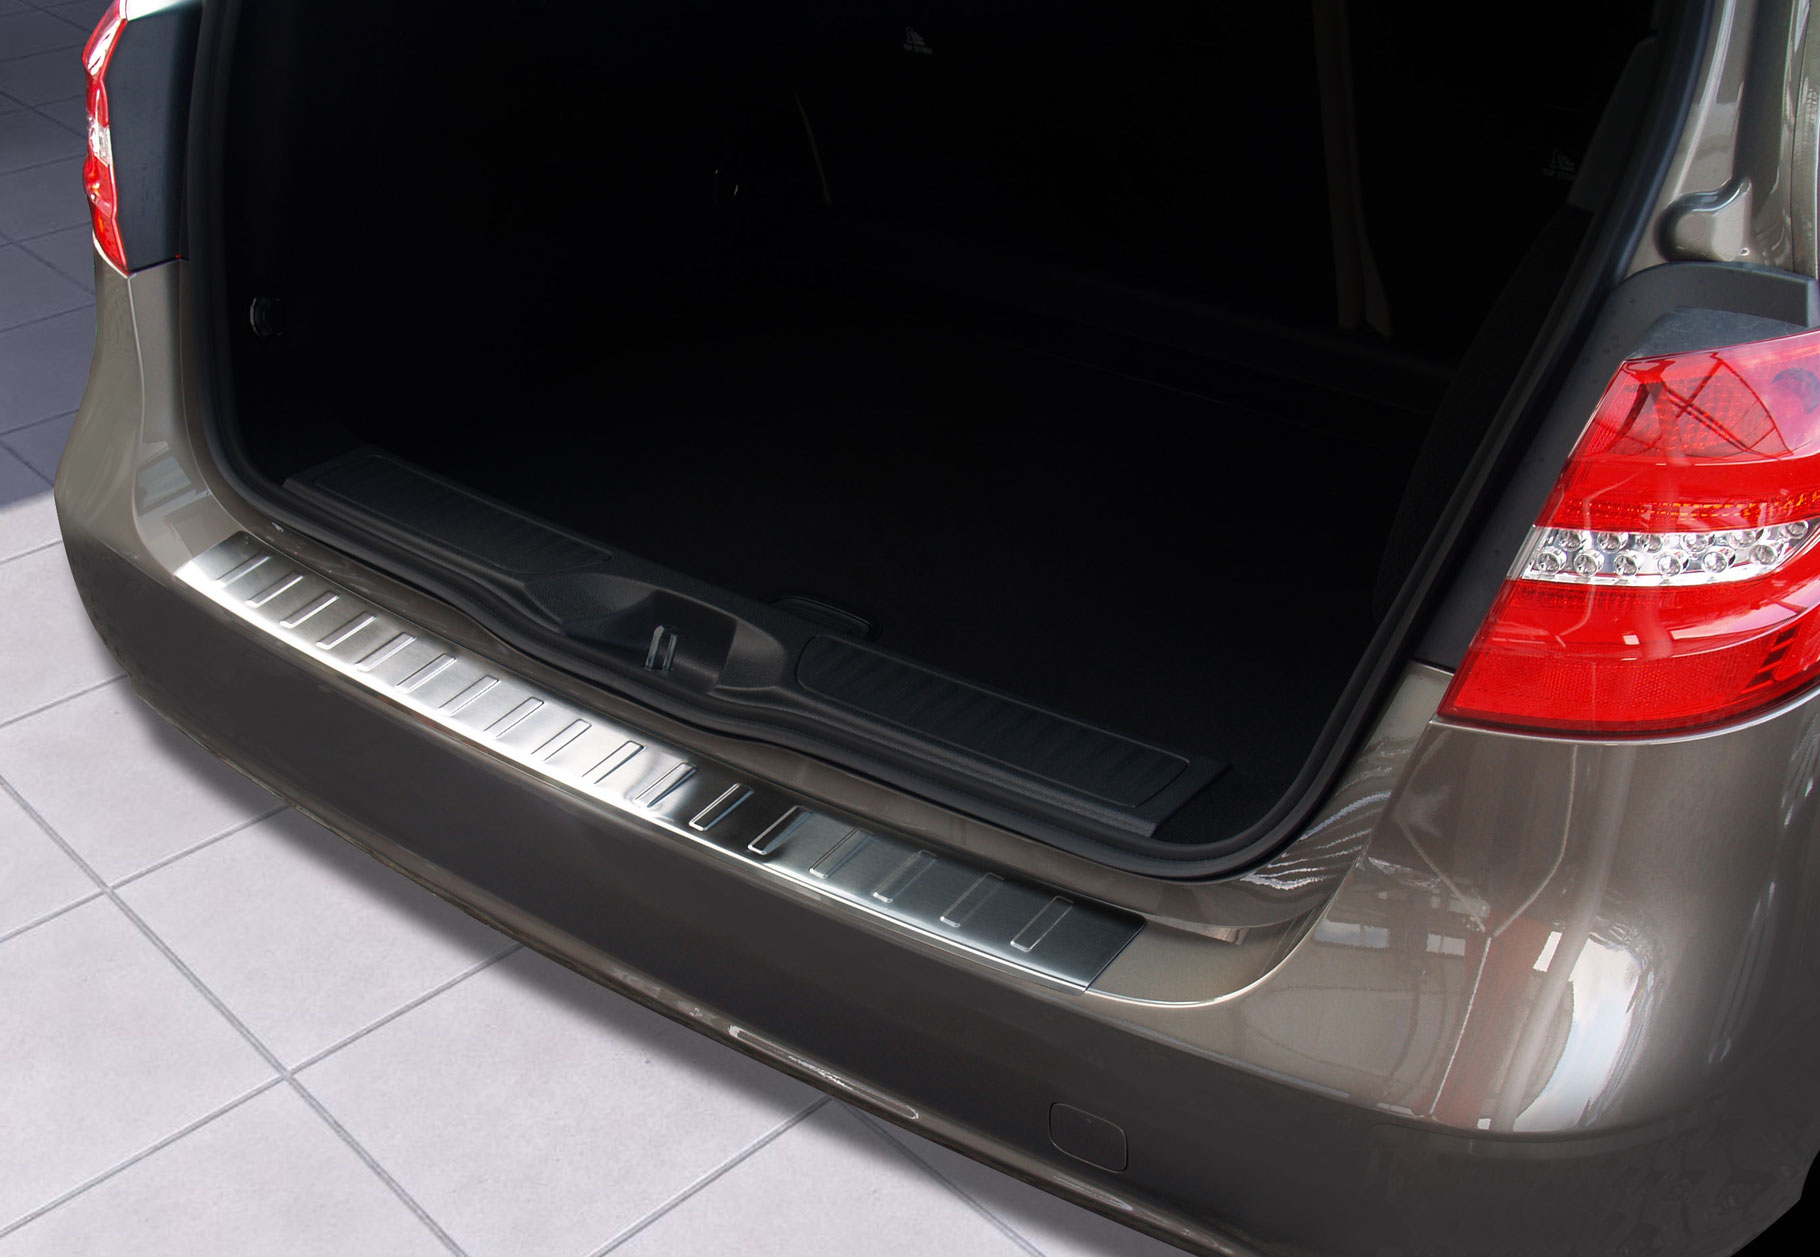 Ladekantenschutz Mercedes B-Klasse - Schutz für die Ladekante Ihres  Fahrzeuges